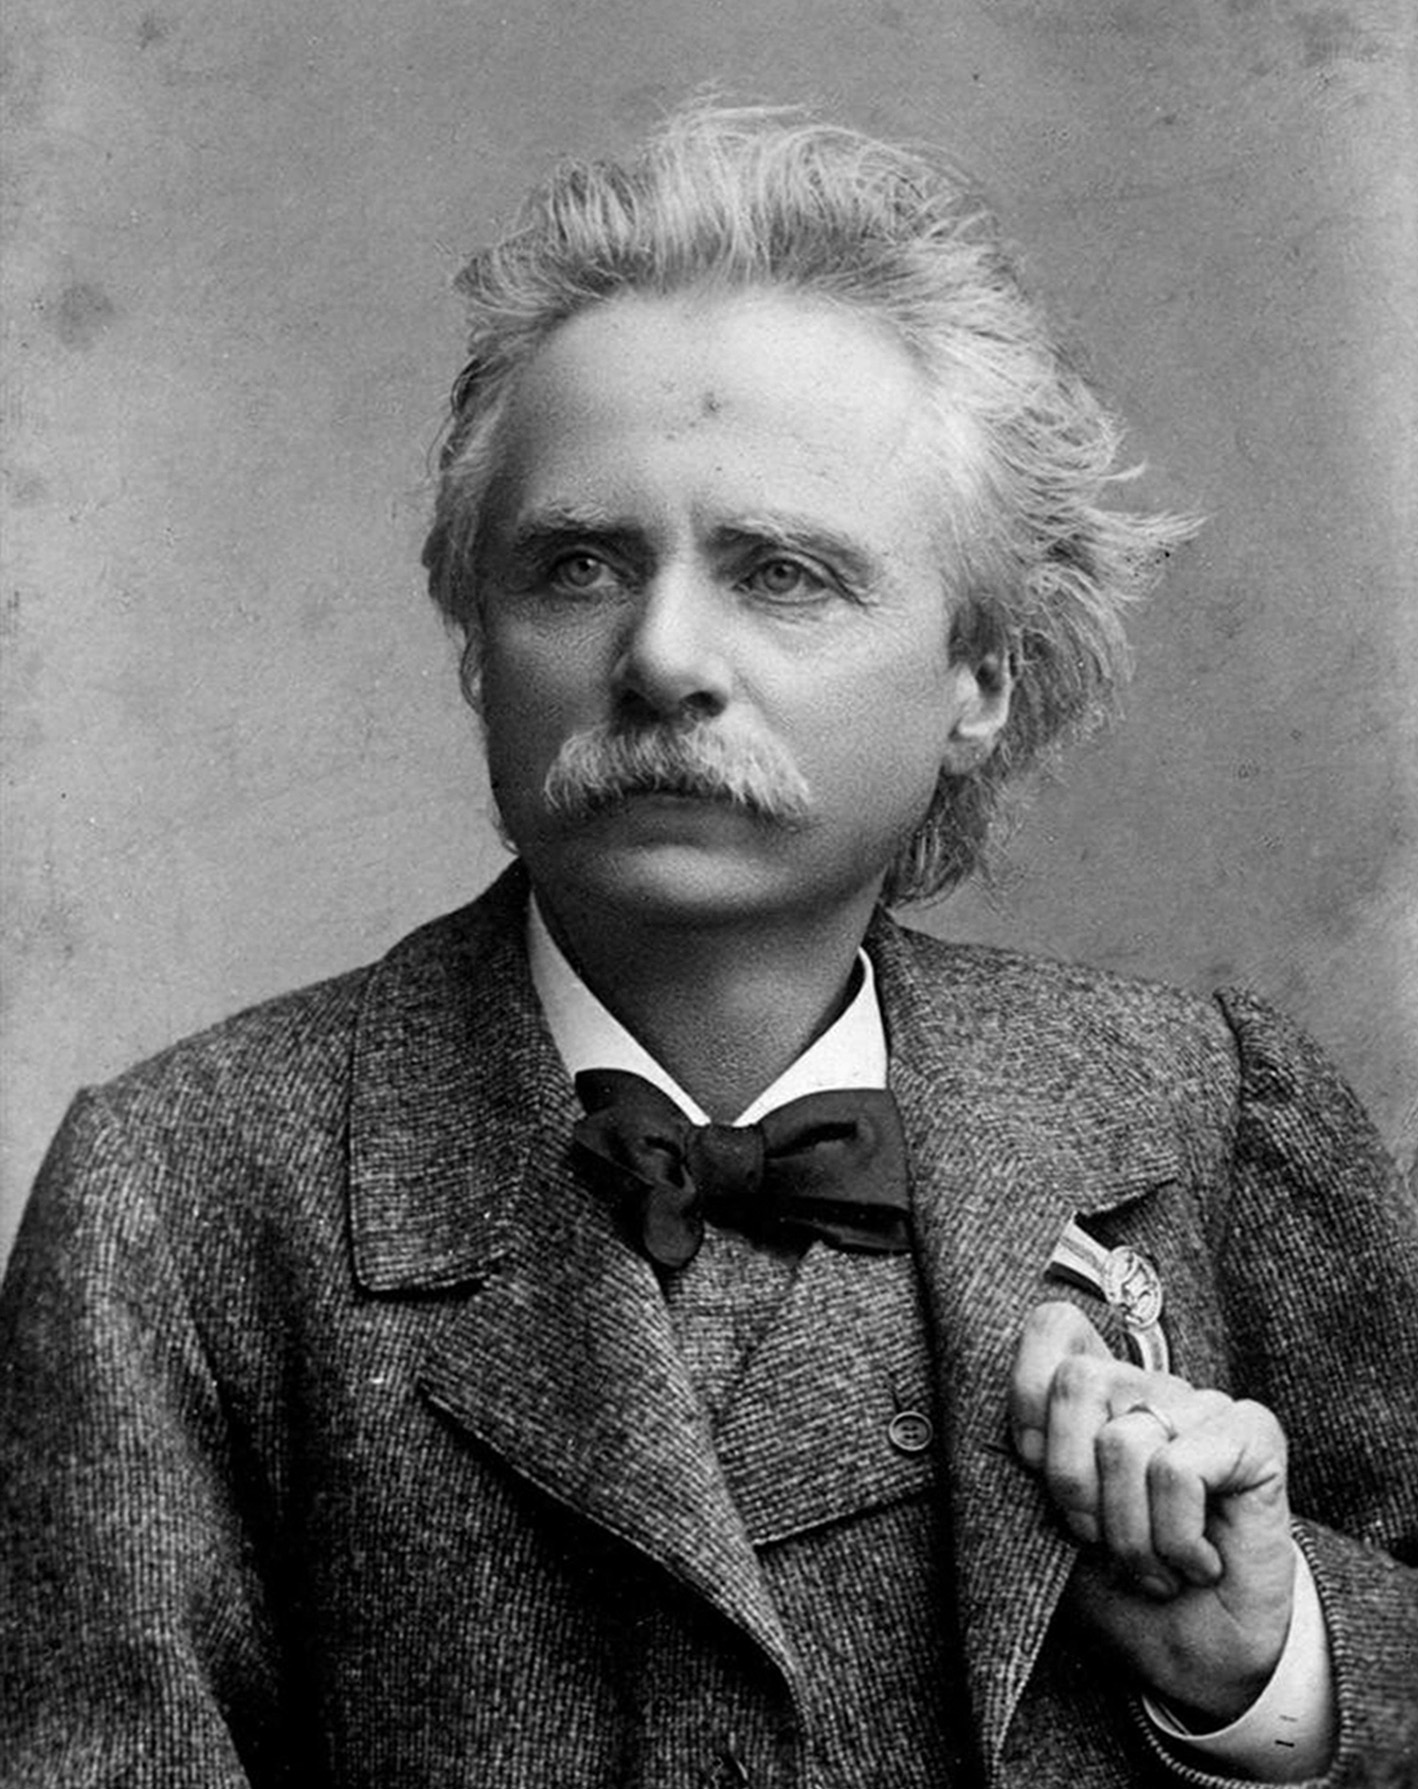 Edvard Hagerup Grieg<br />
(rođen 15. lipnja 1843., Bergen, Norveška – umro 4. rujna 1907., Bergen), bio je najveći Norveški skladatelj i osnivač Norveške nacionalne glazbene škole.<br />
